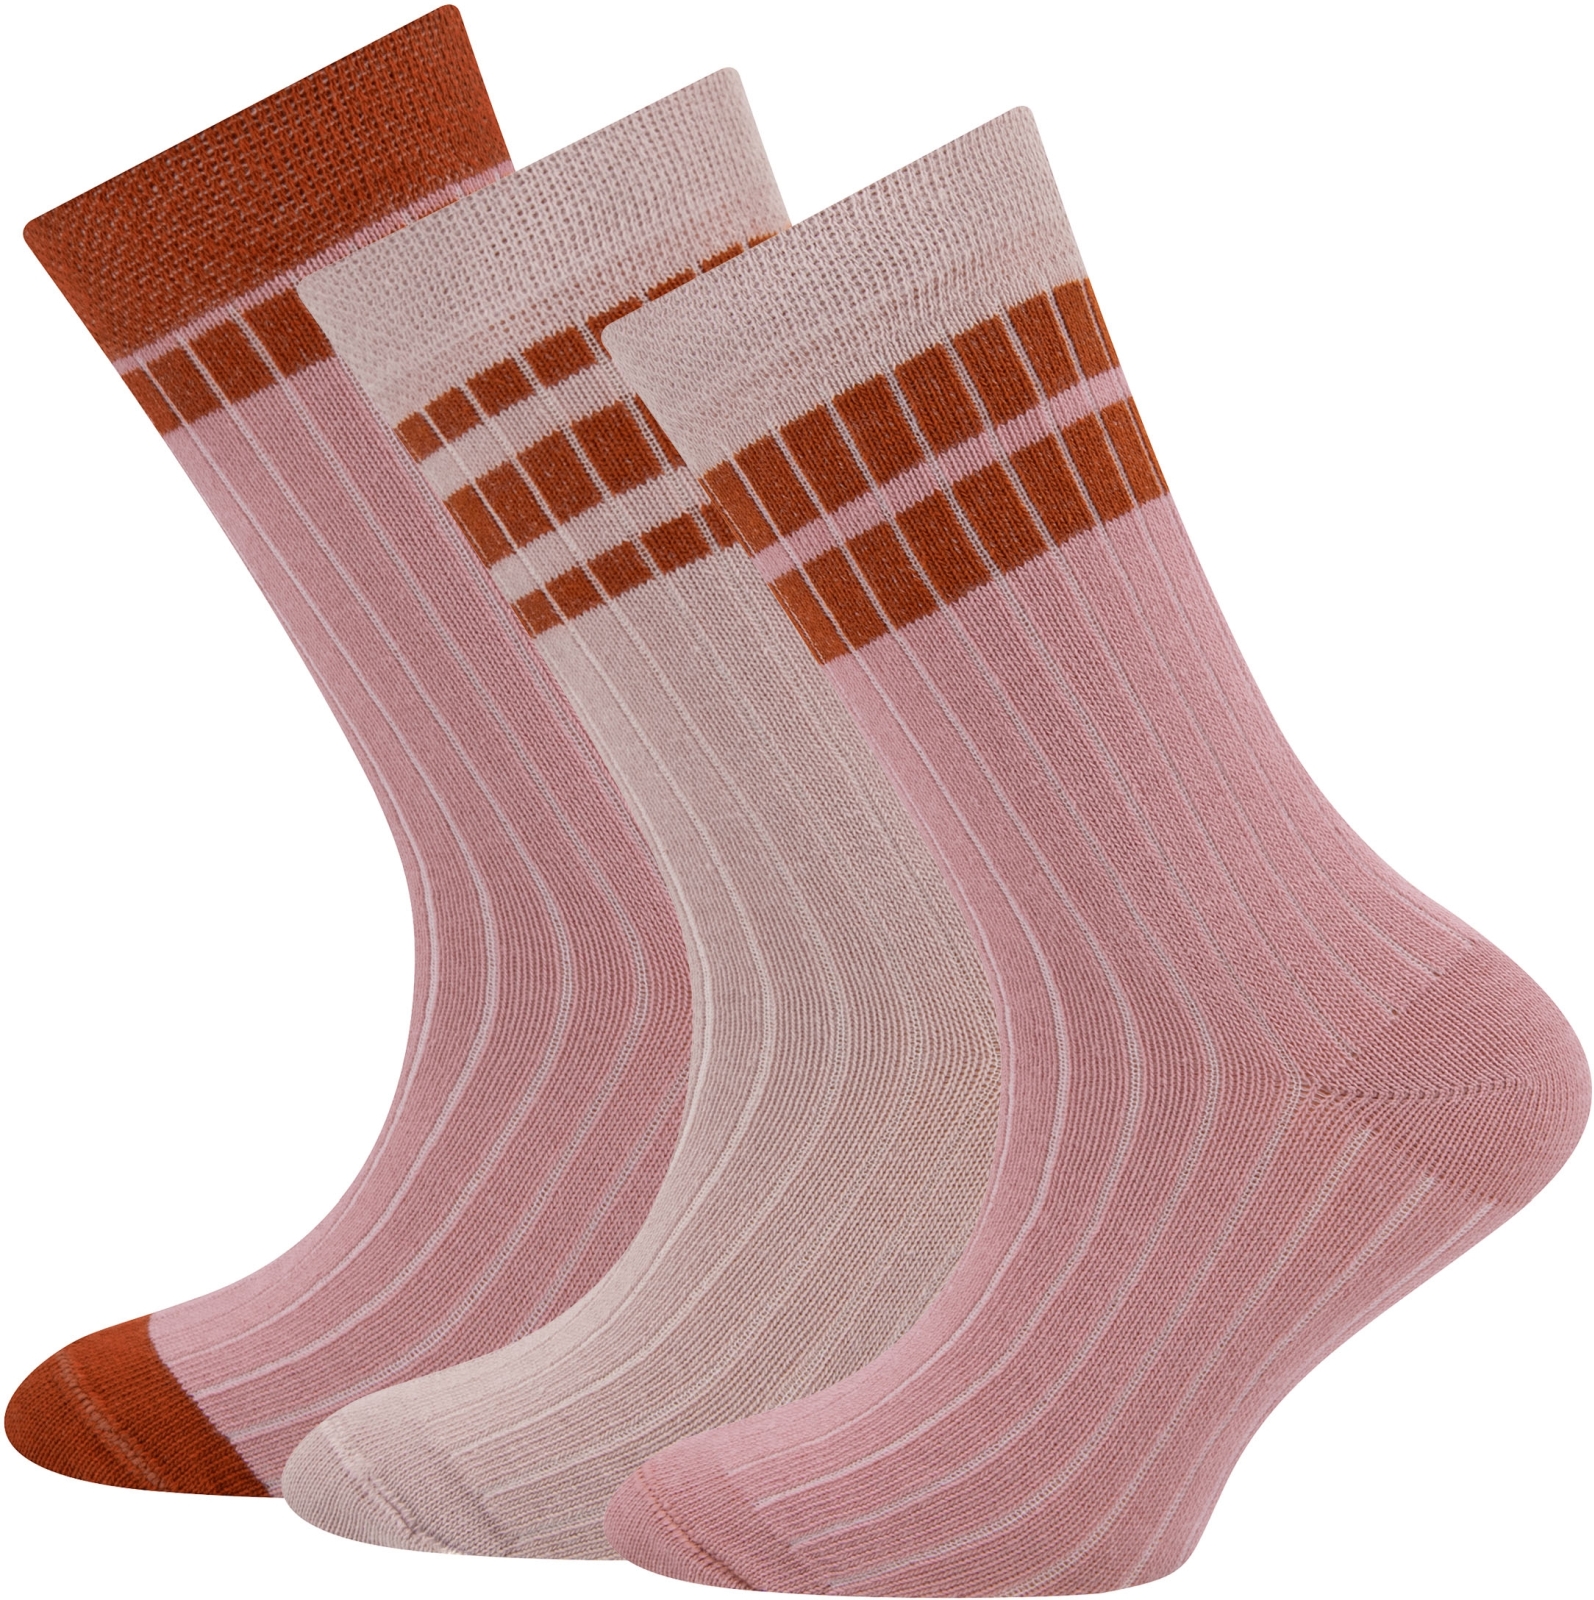 Ewers Socken 3er Pack Rippe/Ringel - 0001 23-26